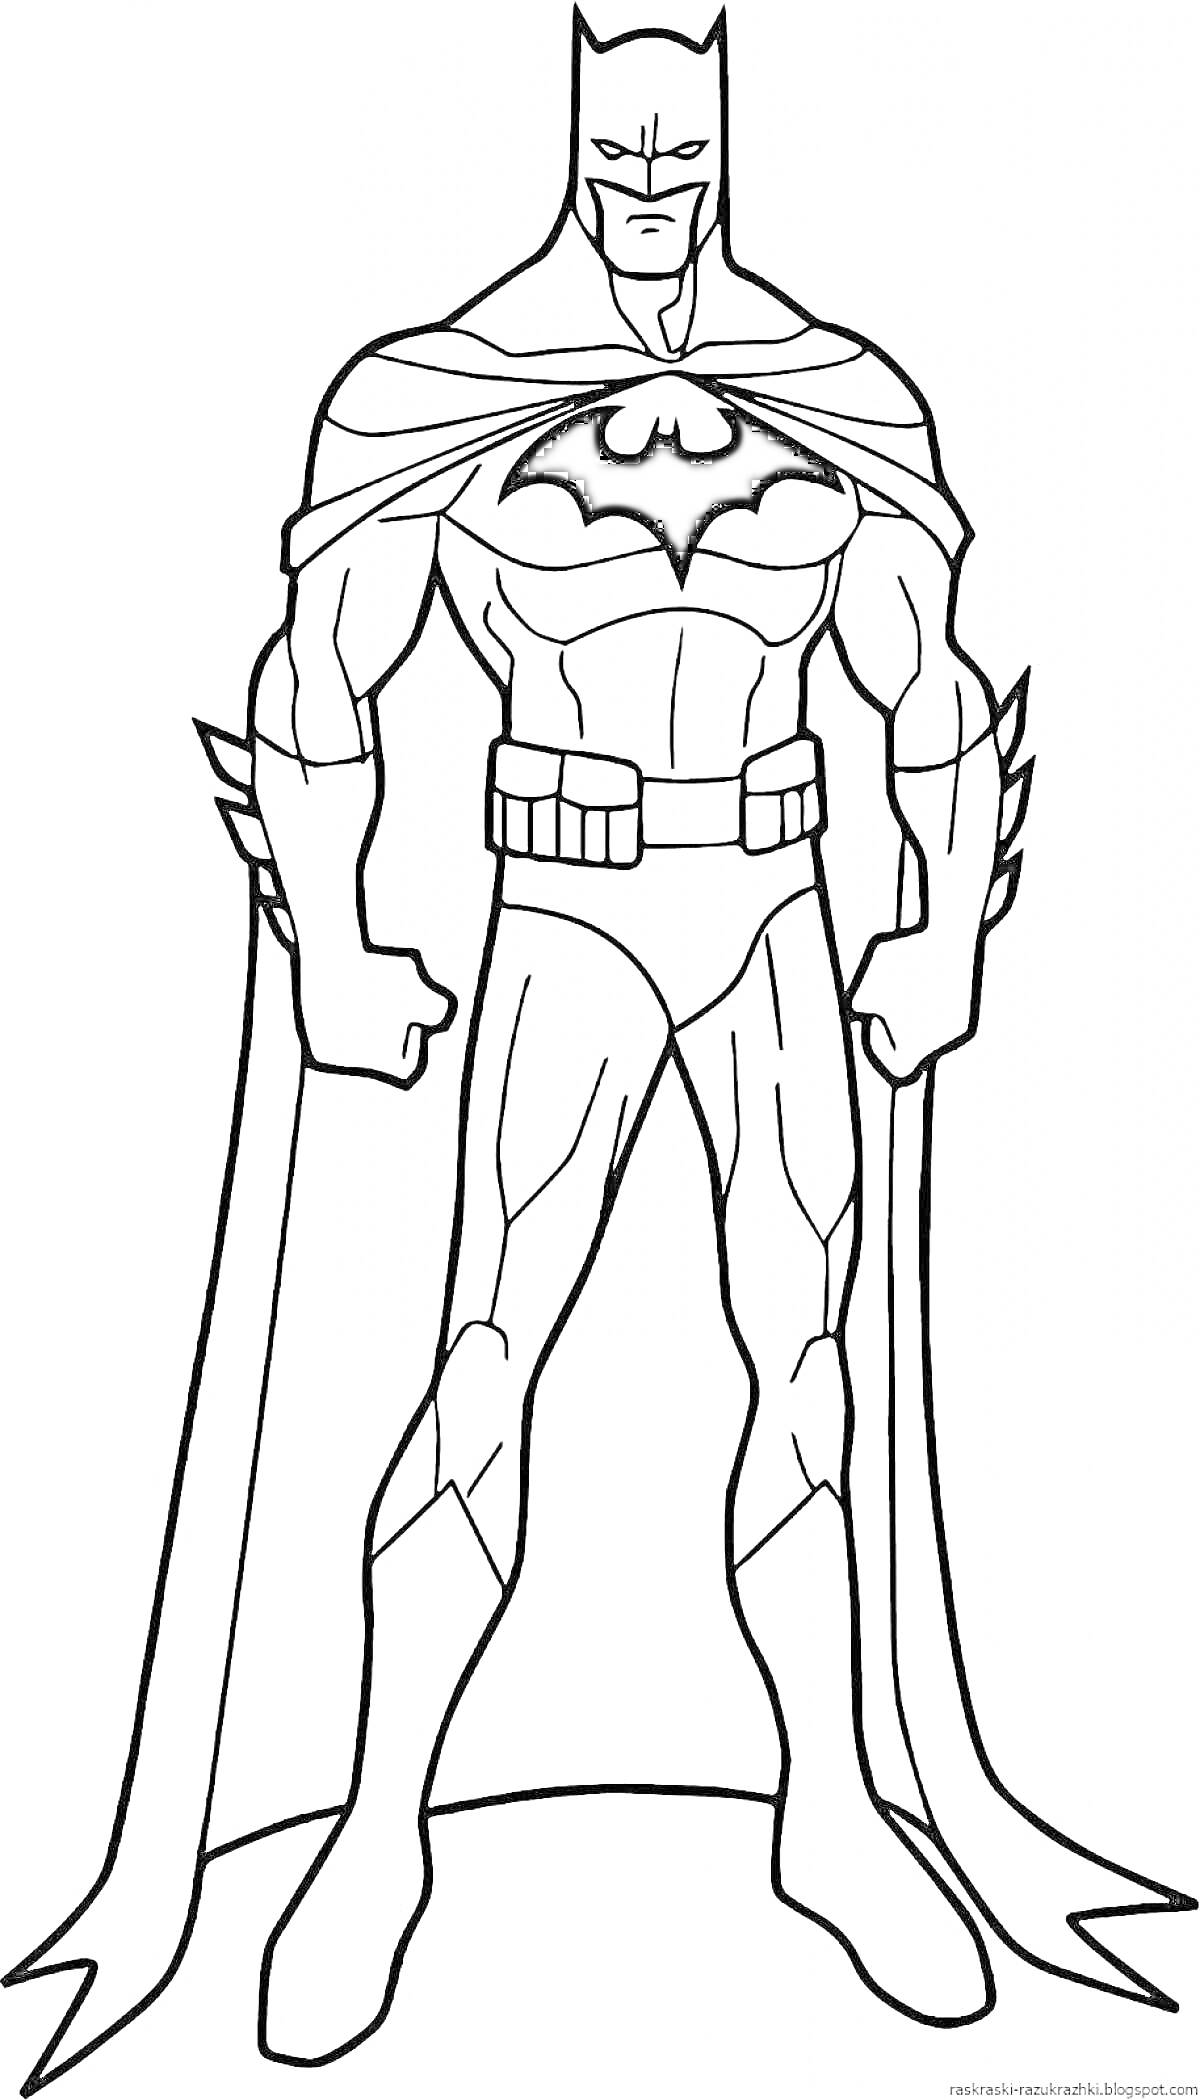 Раскраска Бэтмен в плаще, с поясом, стоящий в полный рост